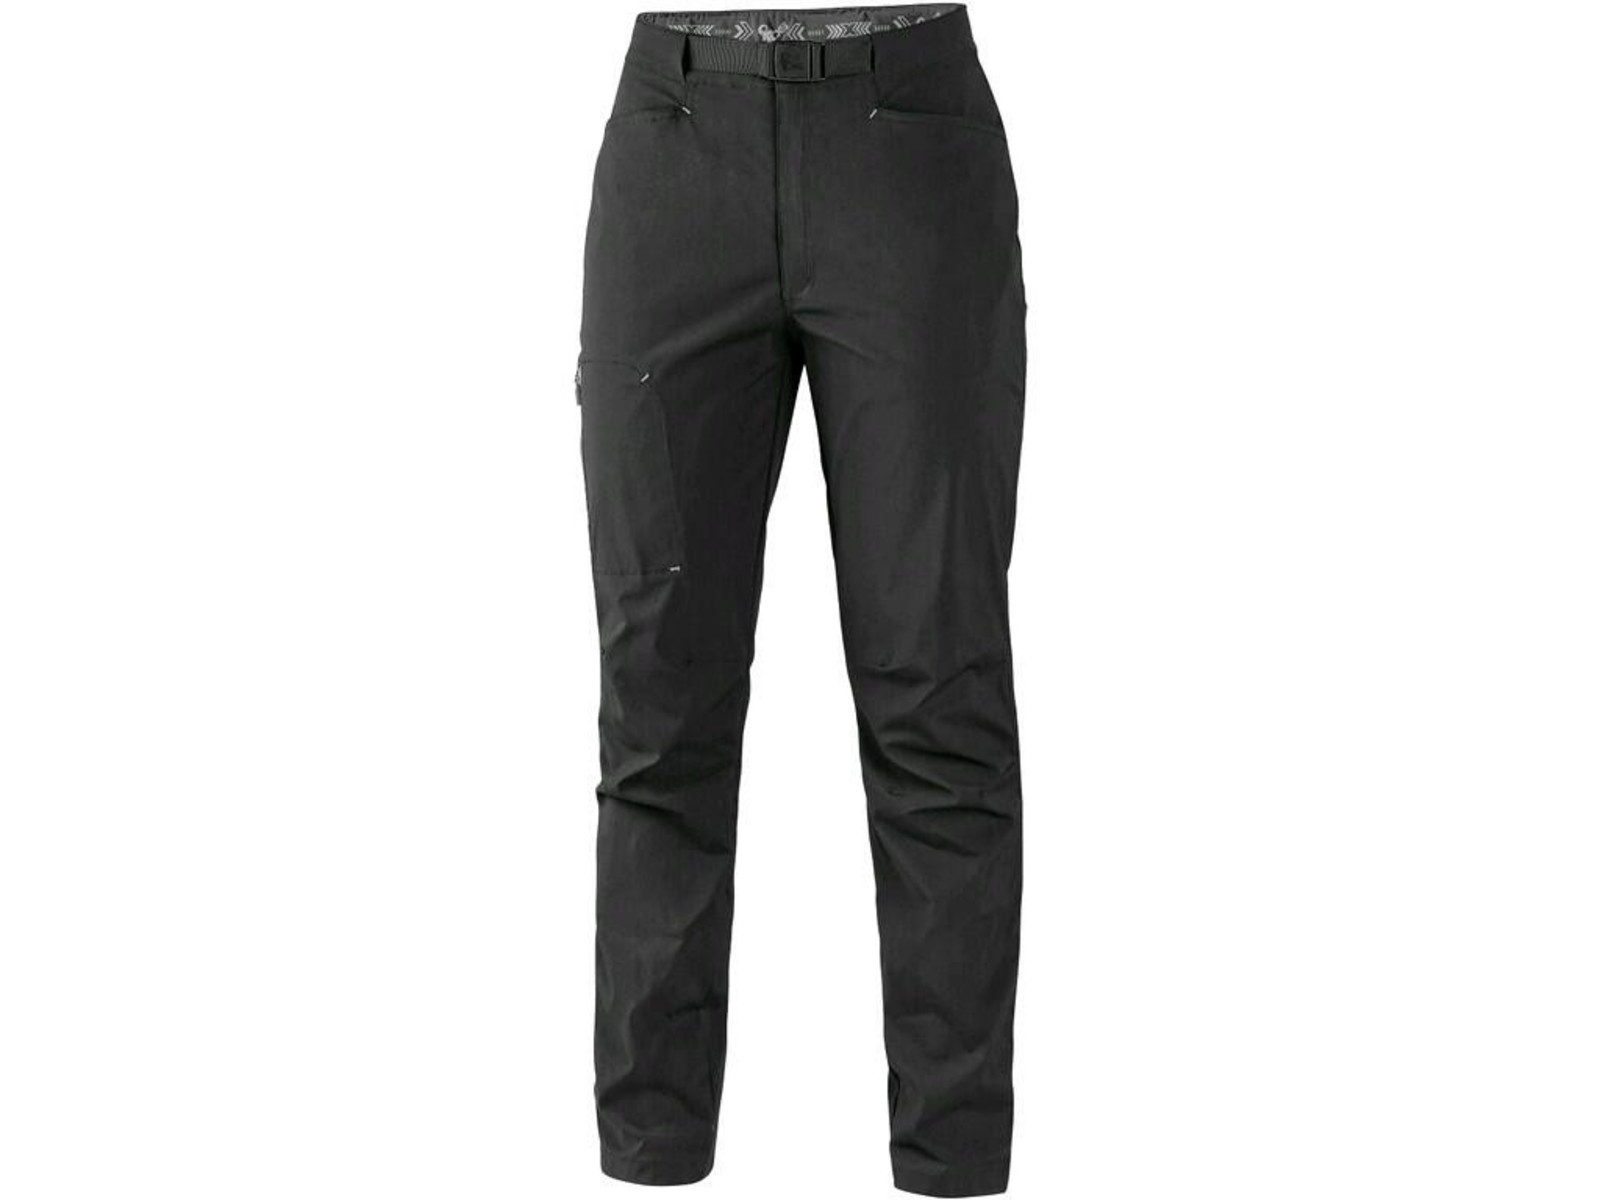 Dámske letné nohavice CXS Oregon - veľkosť: 44, farba: čierna/sivá